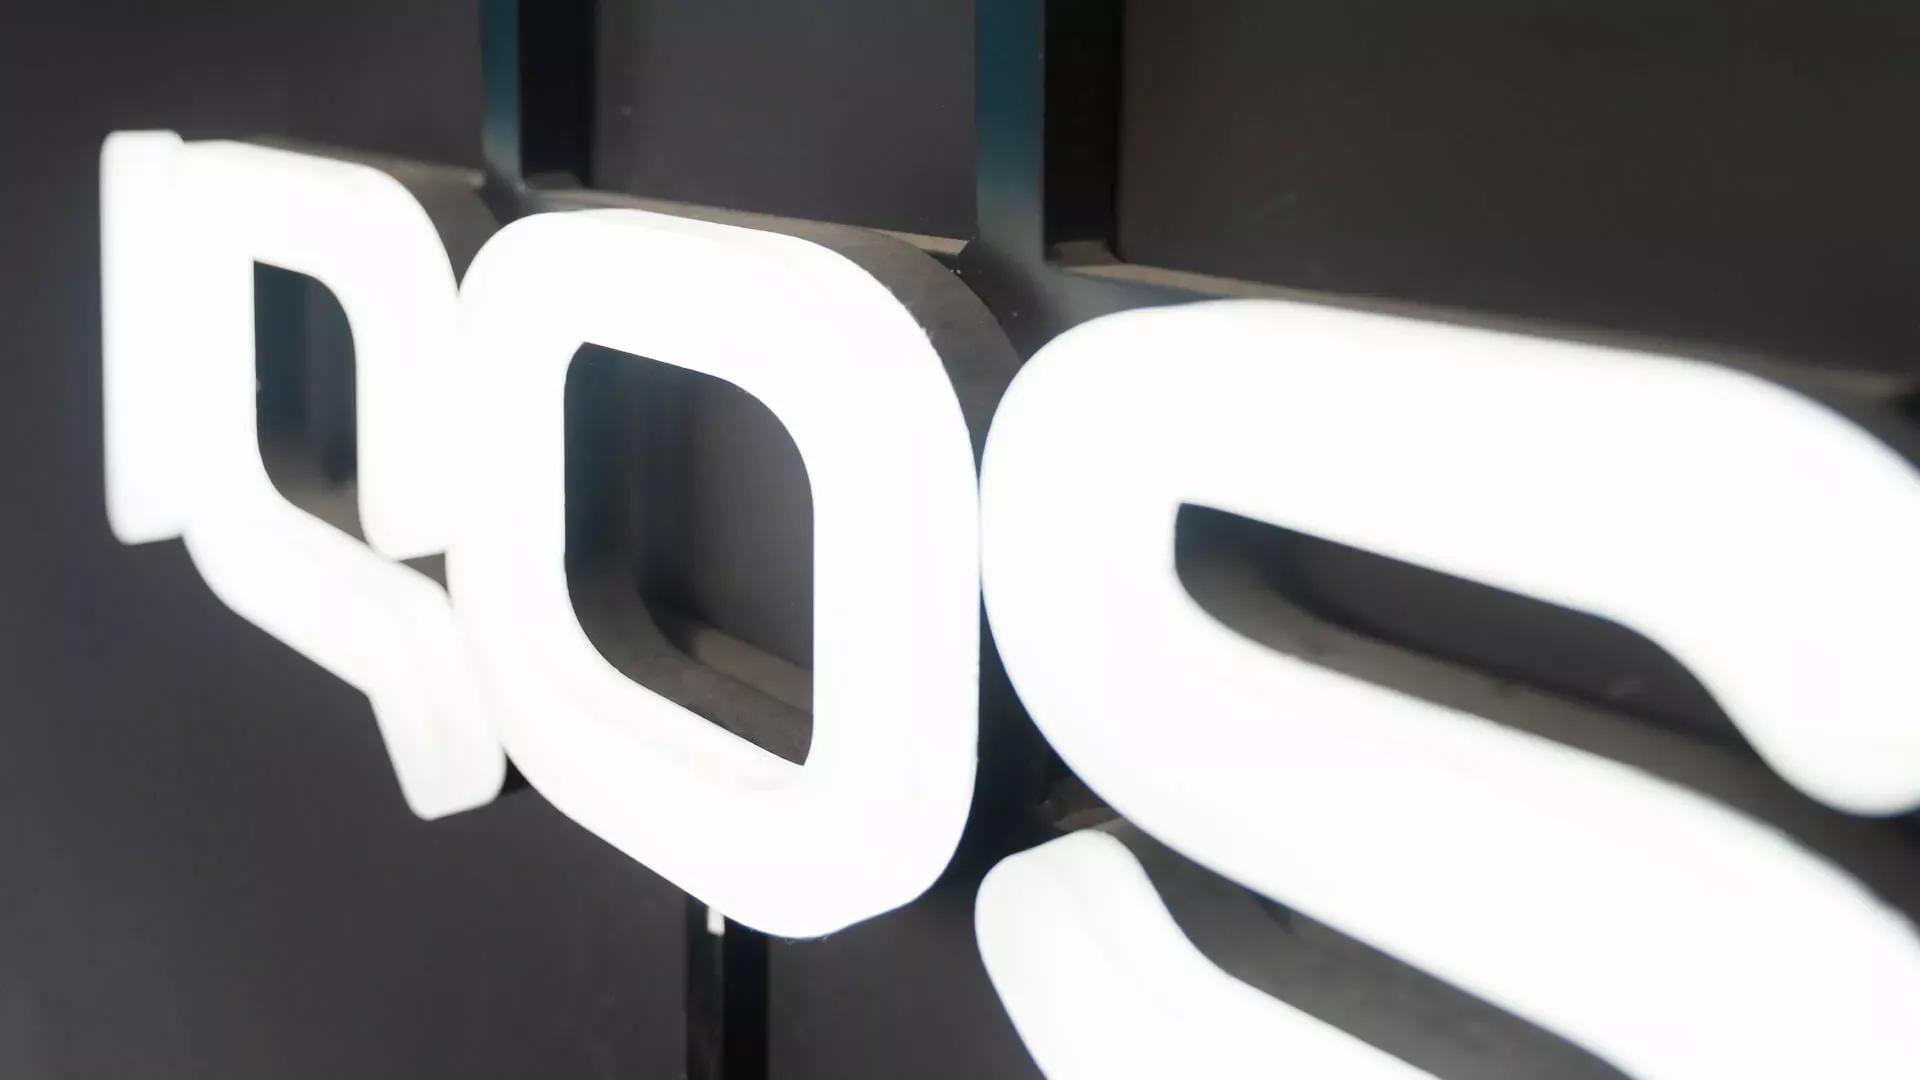 Iqos - napis IQOS wykonane z pleksi, podświetlane na biało